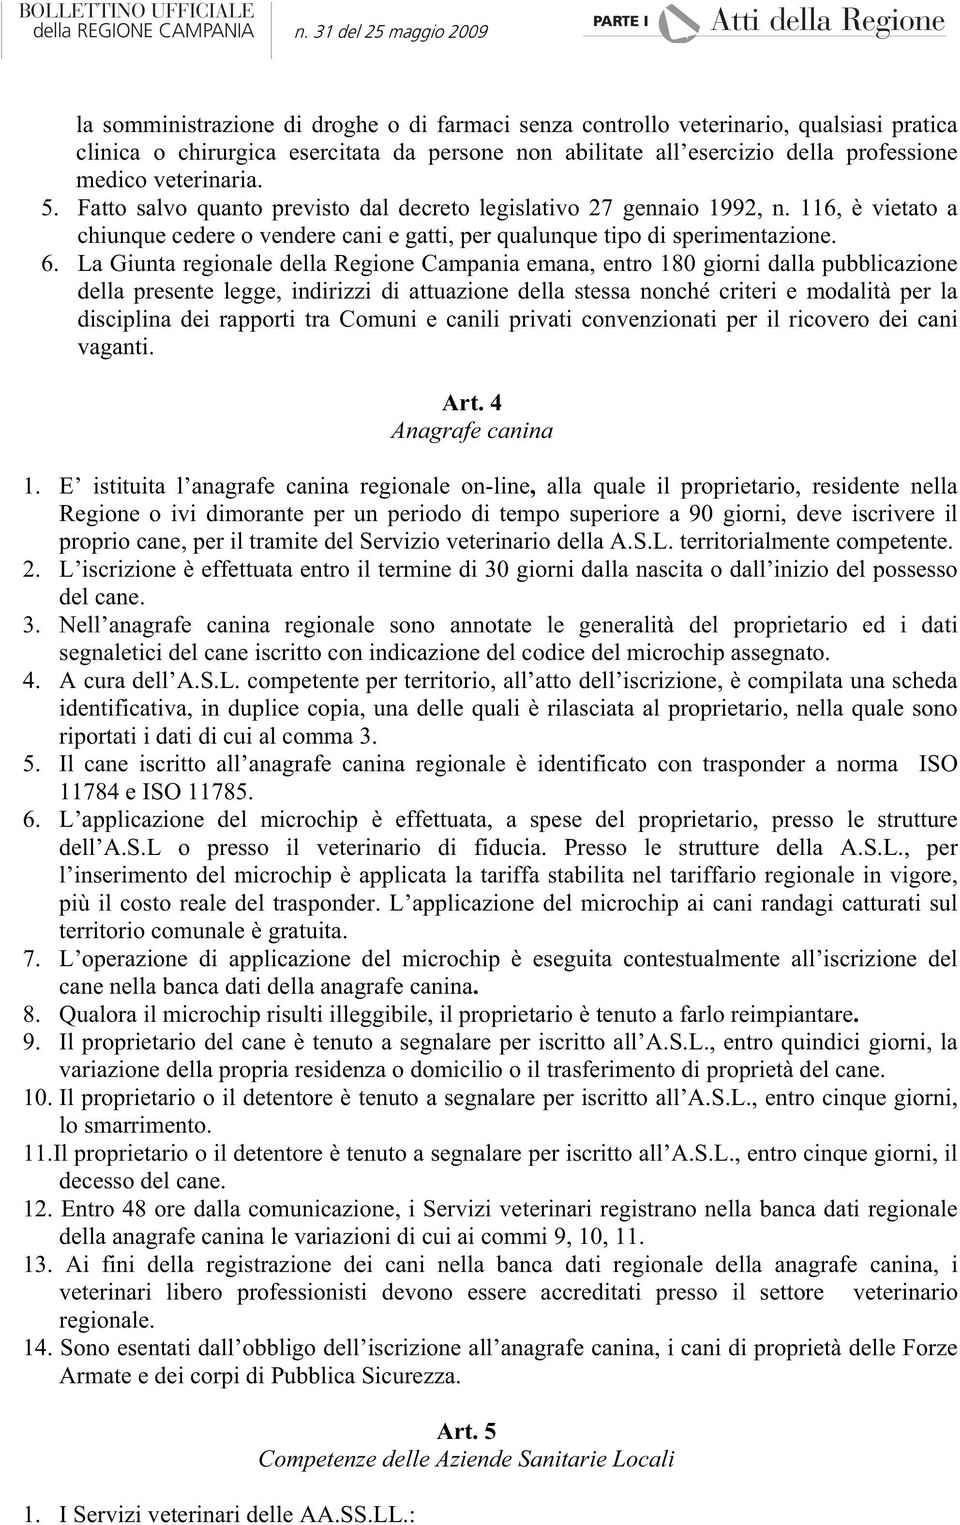 La Giunta regionale della Regione Campania emana, entro 180 giorni dalla pubblicazione della presente legge, indirizzi di attuazione della stessa nonché criteri e modalità per la disciplina dei